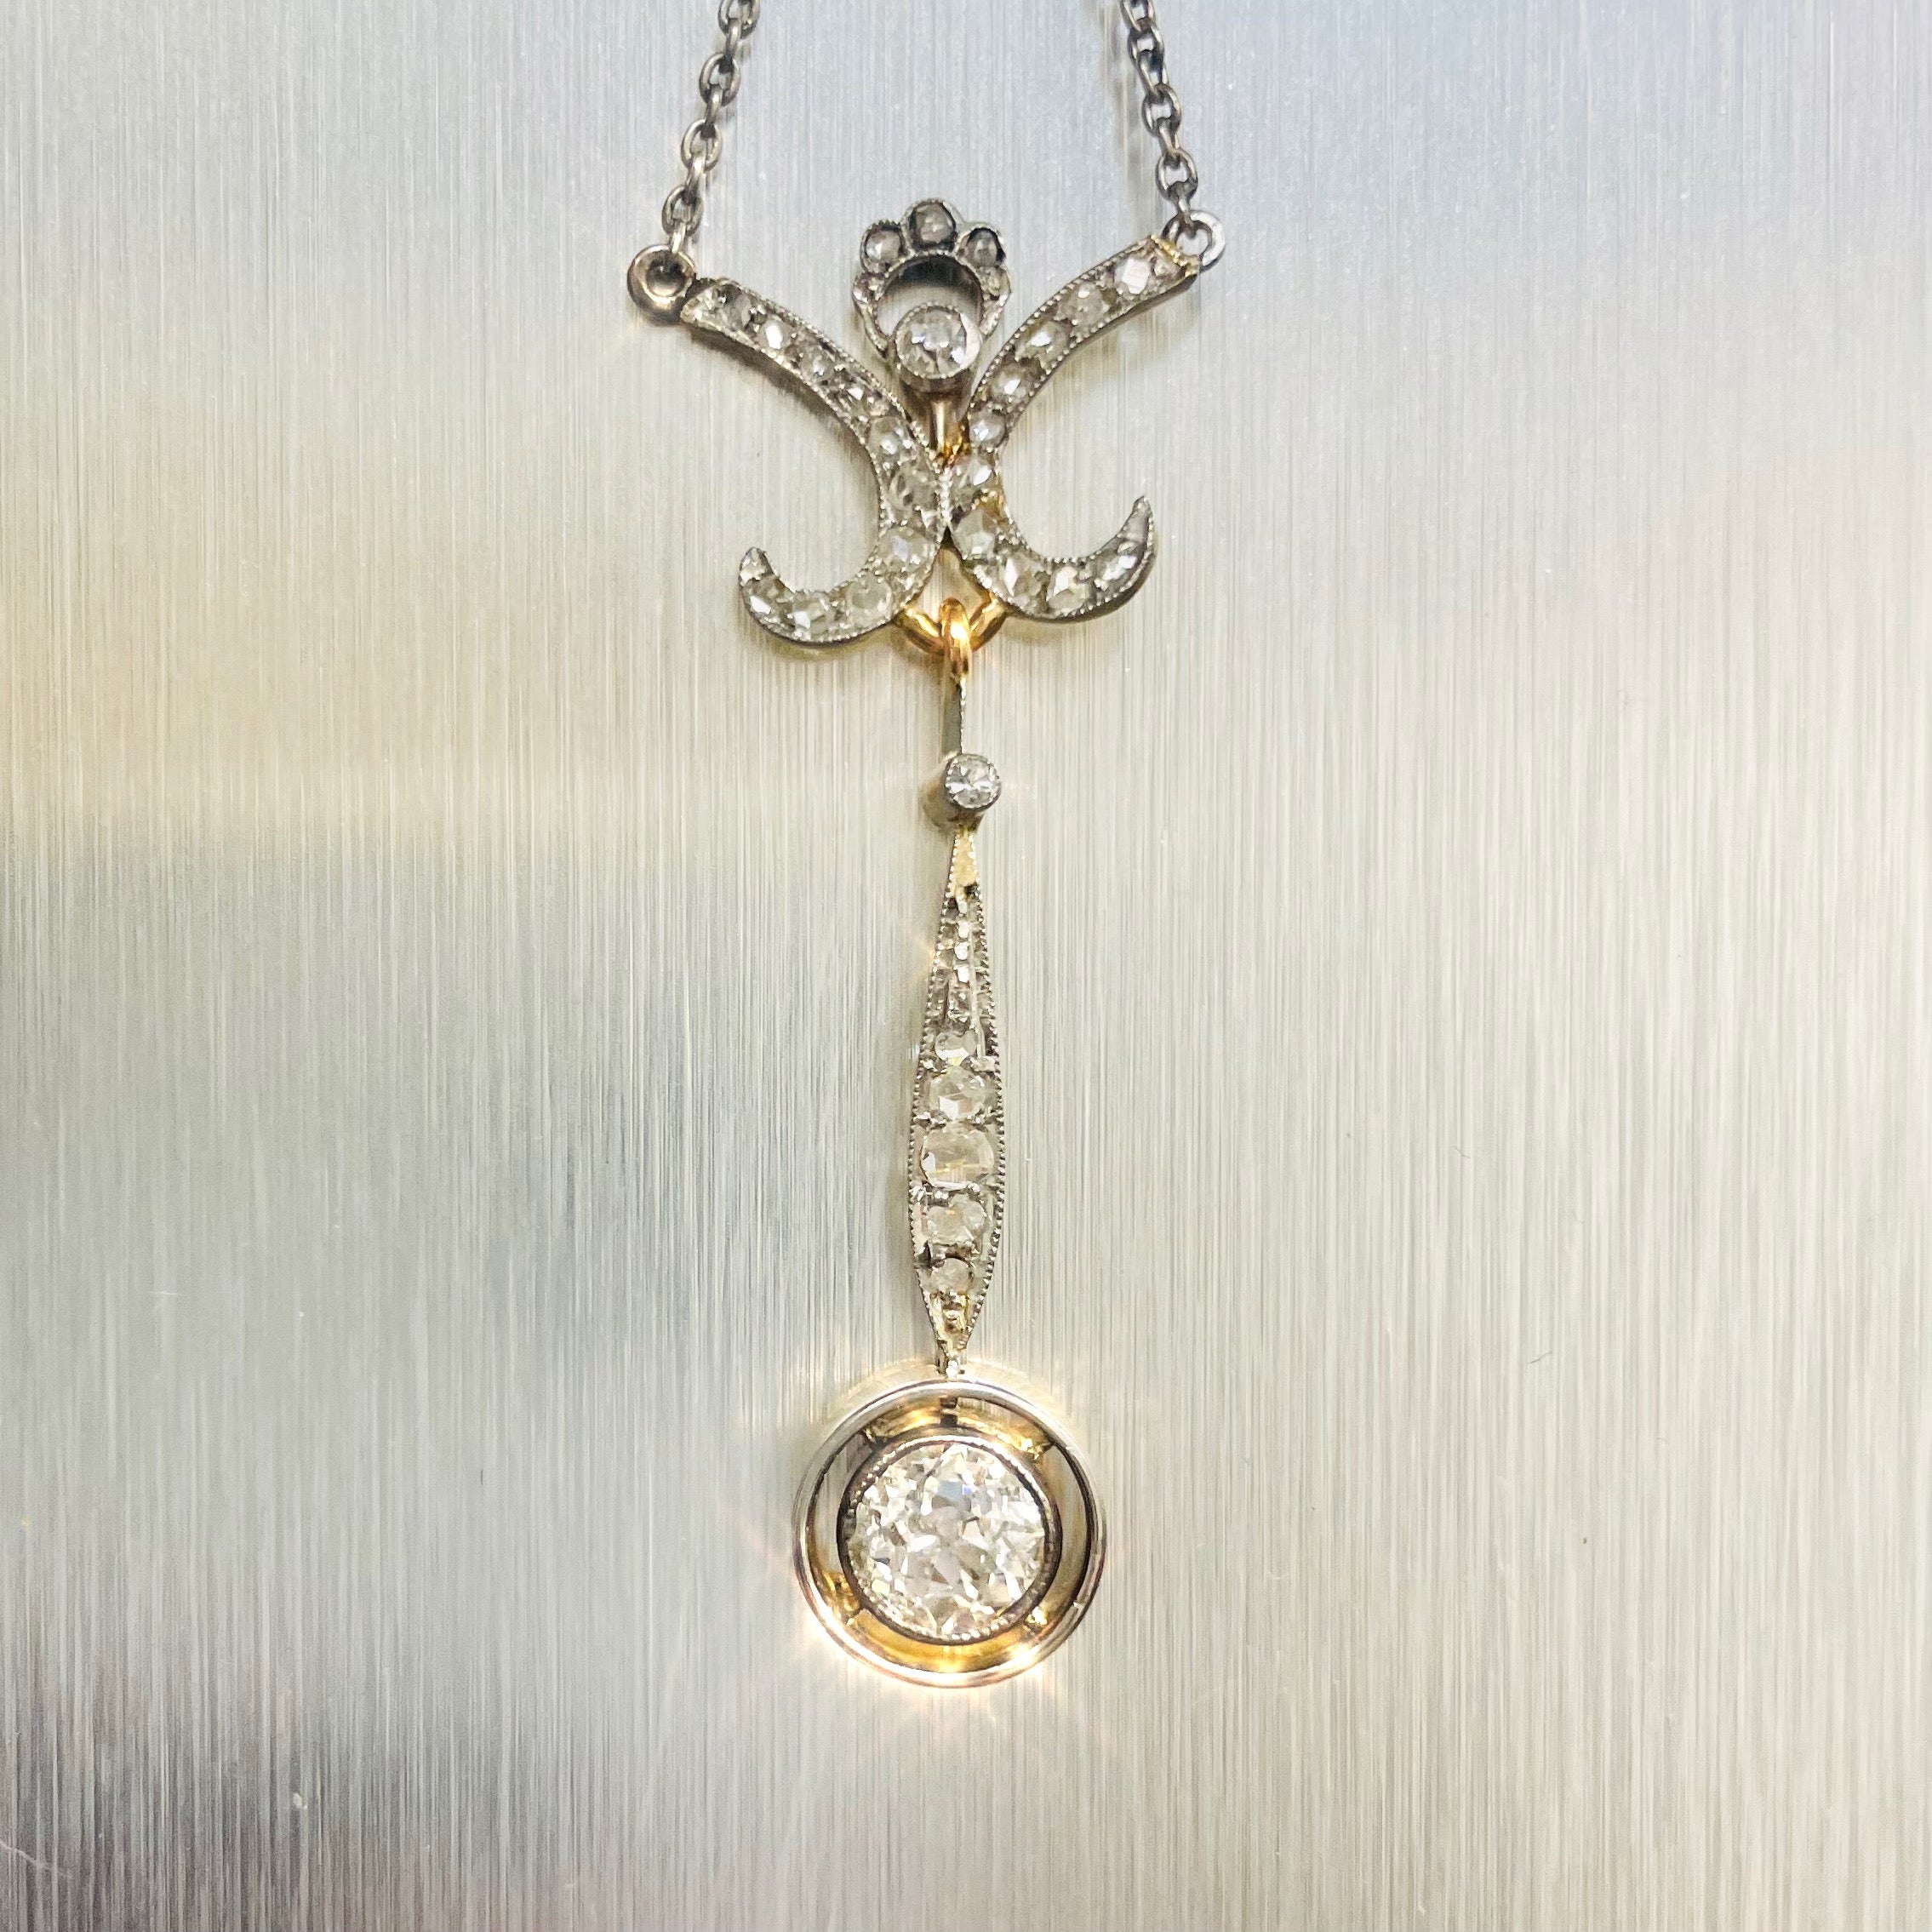 Antique Belle Epoque Old Mine Cut Diamond Lavalier Drop Pendant Necklace